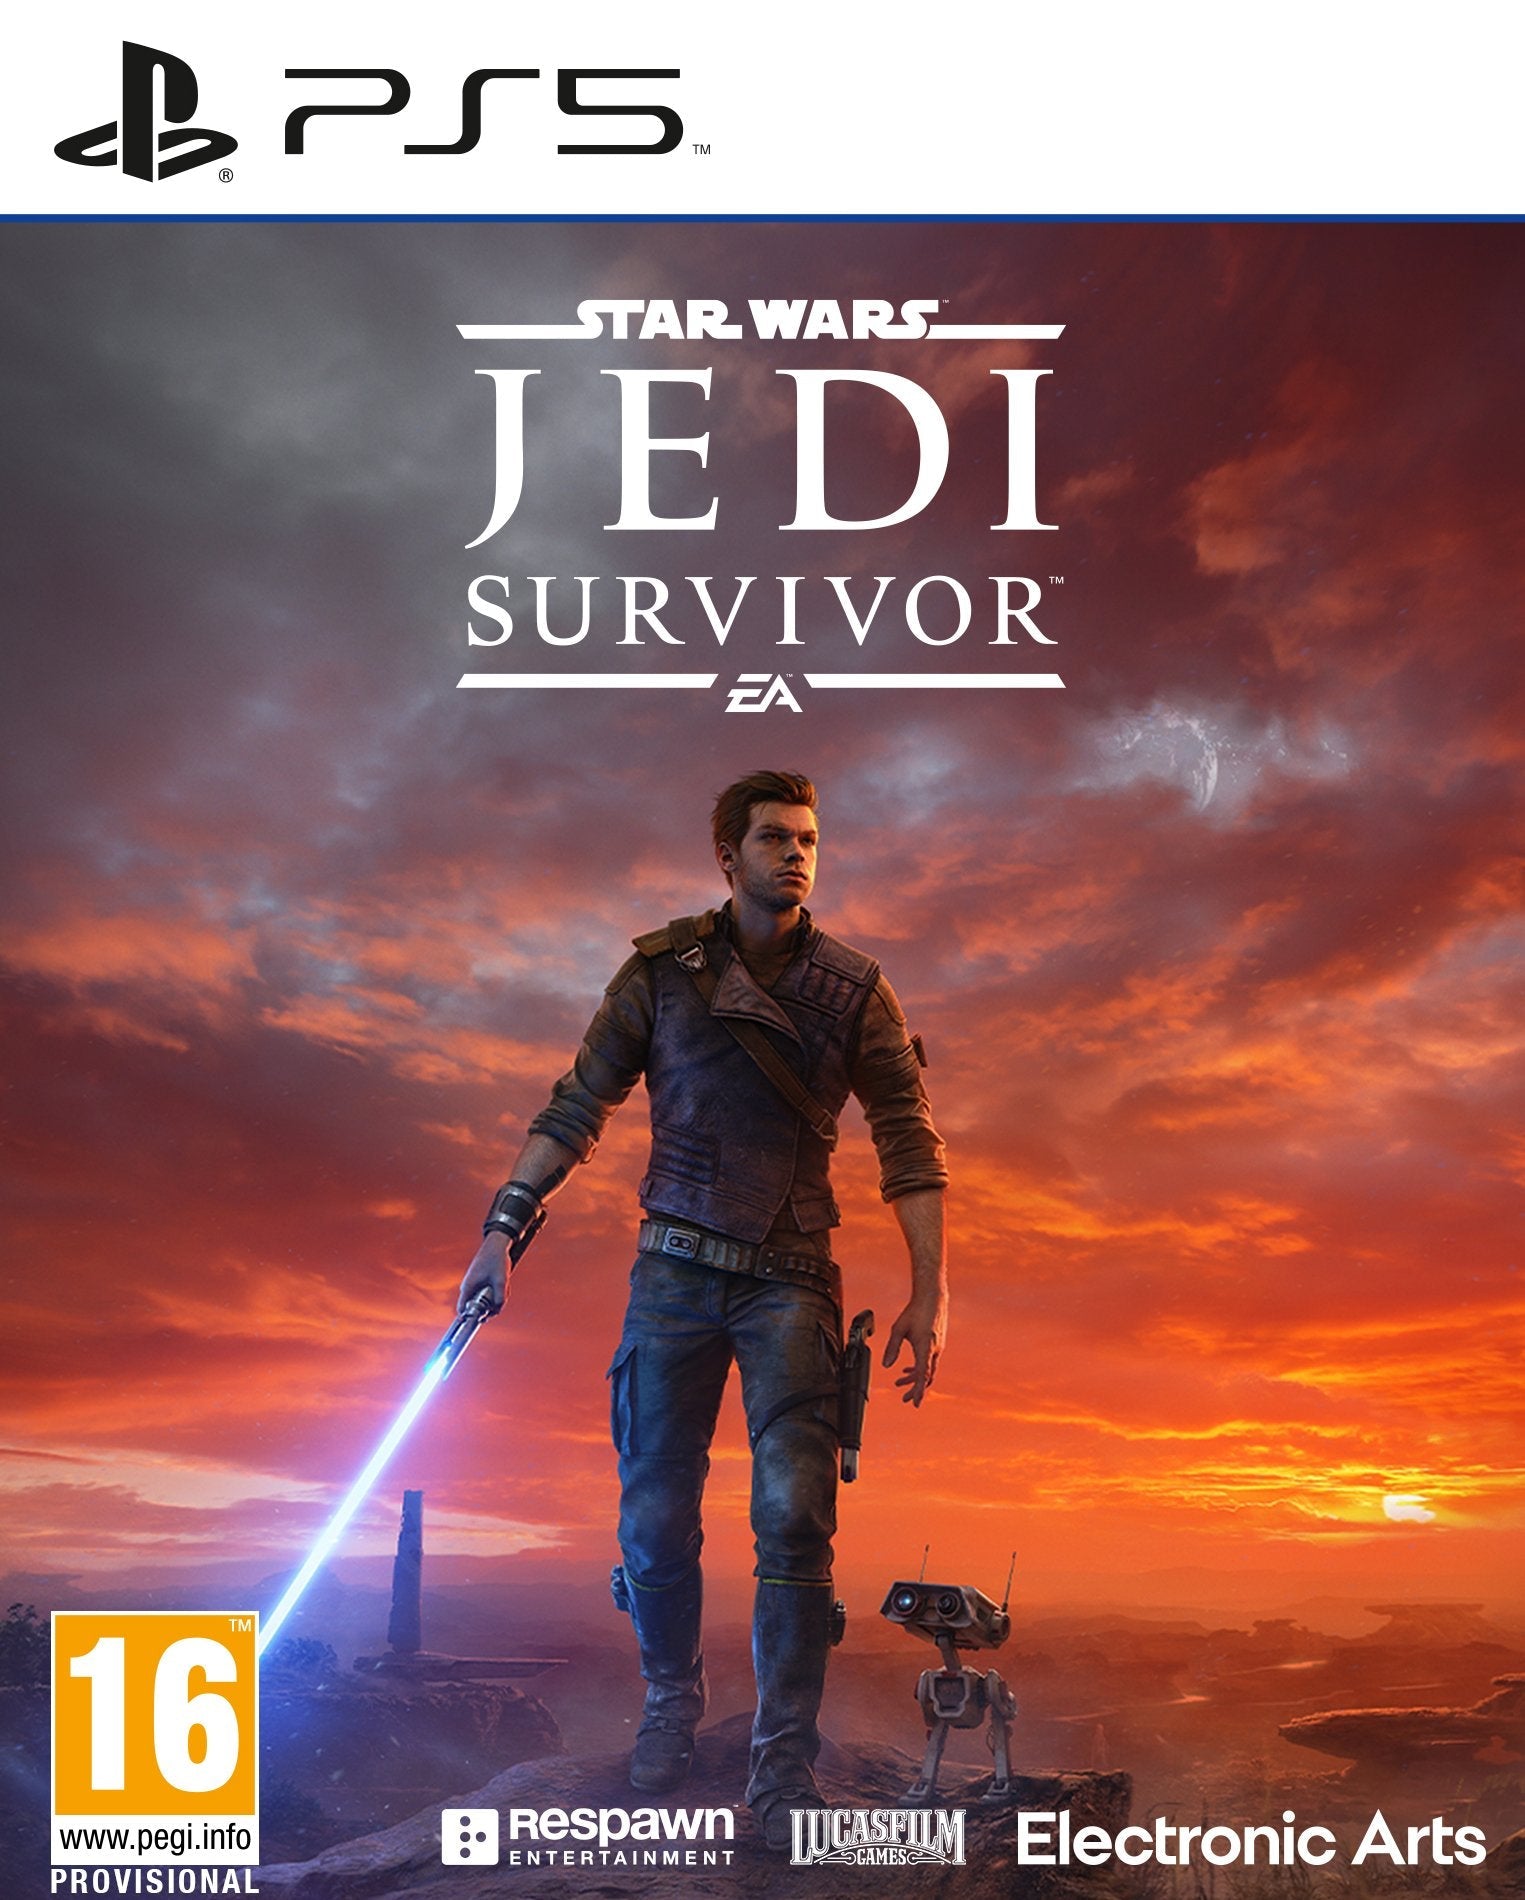 Star Wars Jedi Survivor - Playstation 5